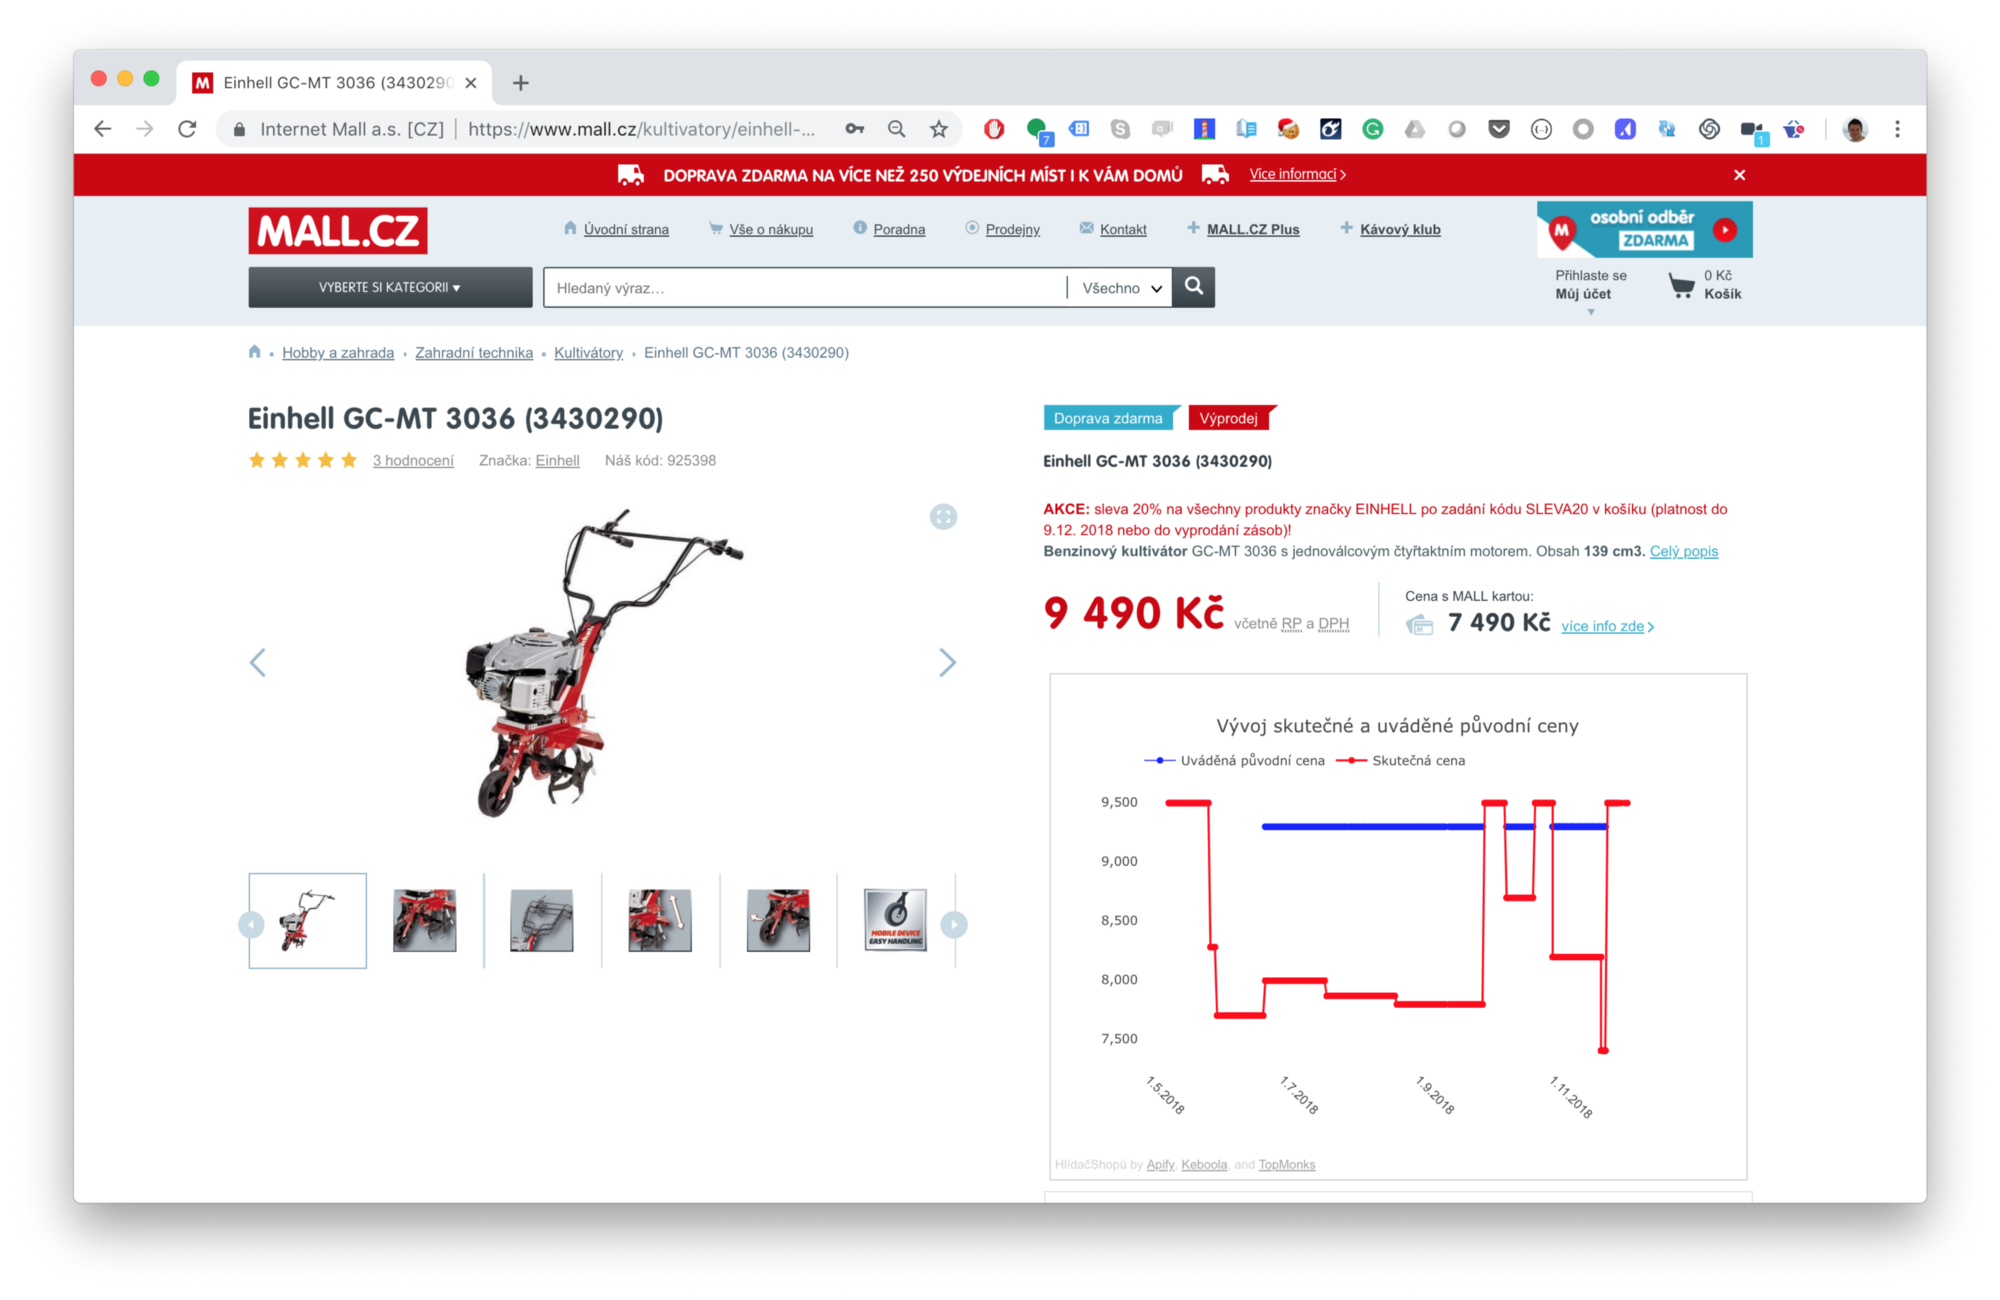 snímek obrazovky kultivátoru, který se prodáva za cenu 9490 Kč na webu mall.cz